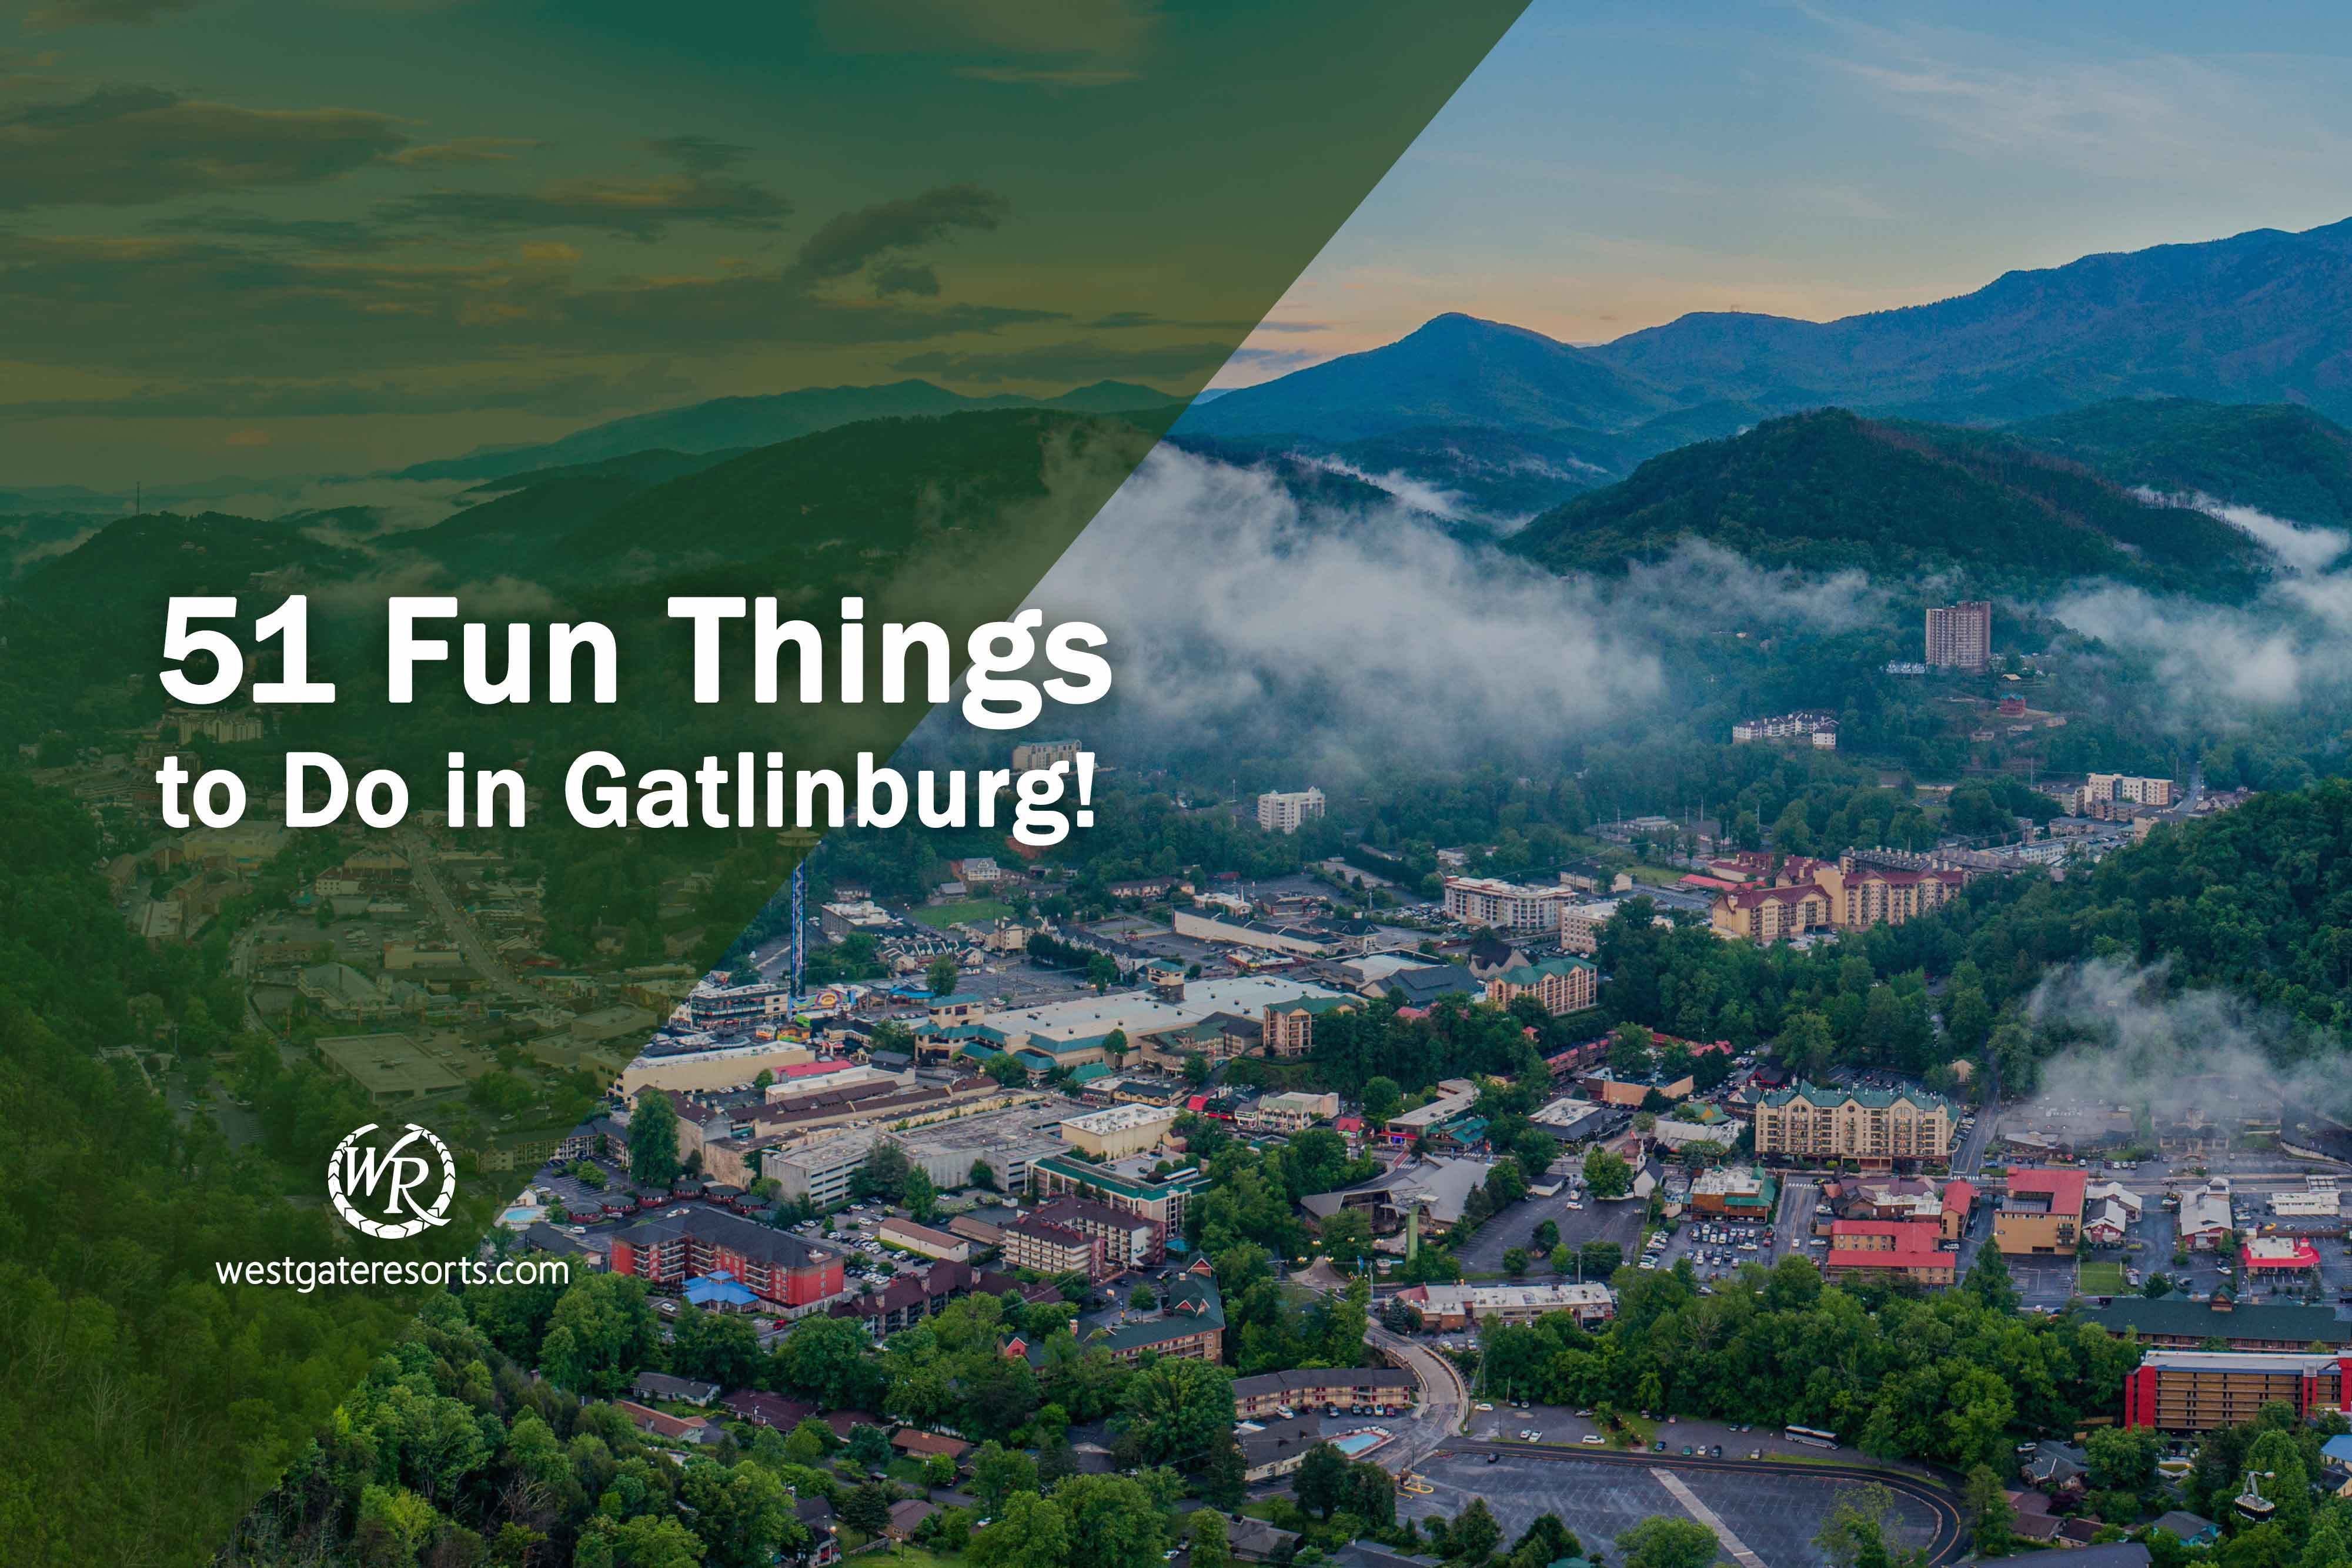 51 Fun Things to Do in Gatlinburg!